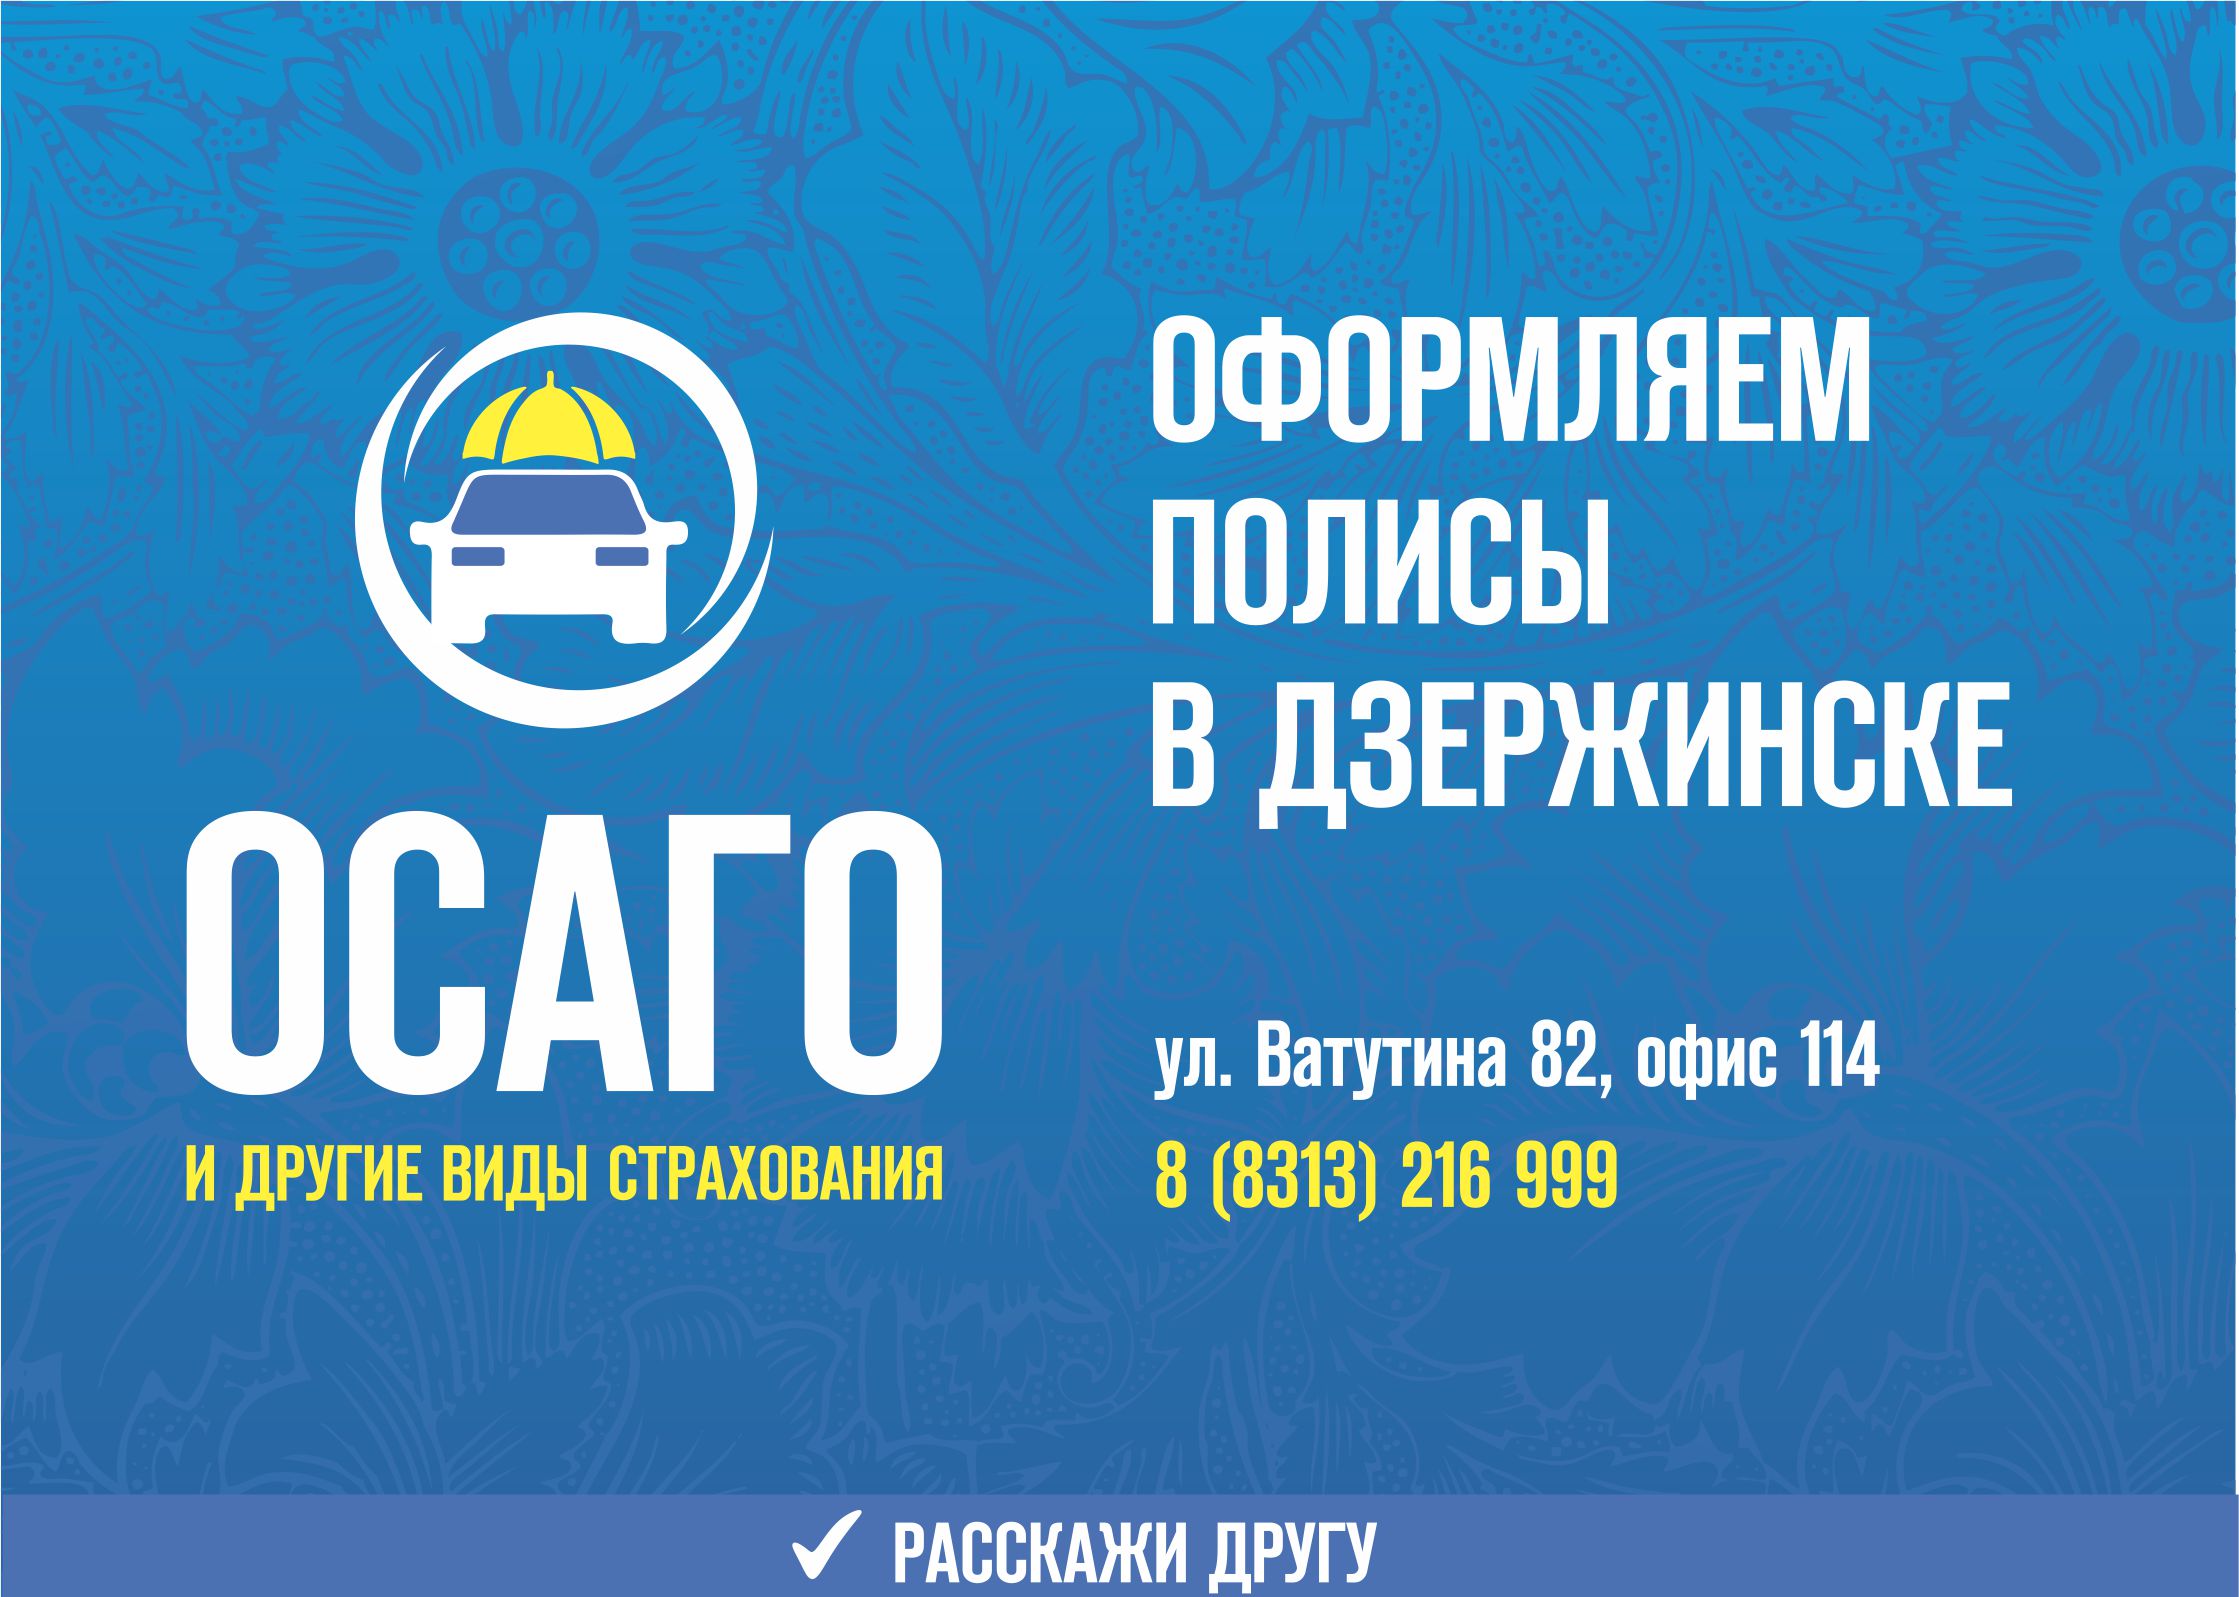 Мы оформляем полисы ОСАГО в Дзержинске на любой вид транспорта в день обращения. Адрес офиса в Дзержинске. где можно купить полис: улица Ватутина 82, офис 114. Телефон: 216-999